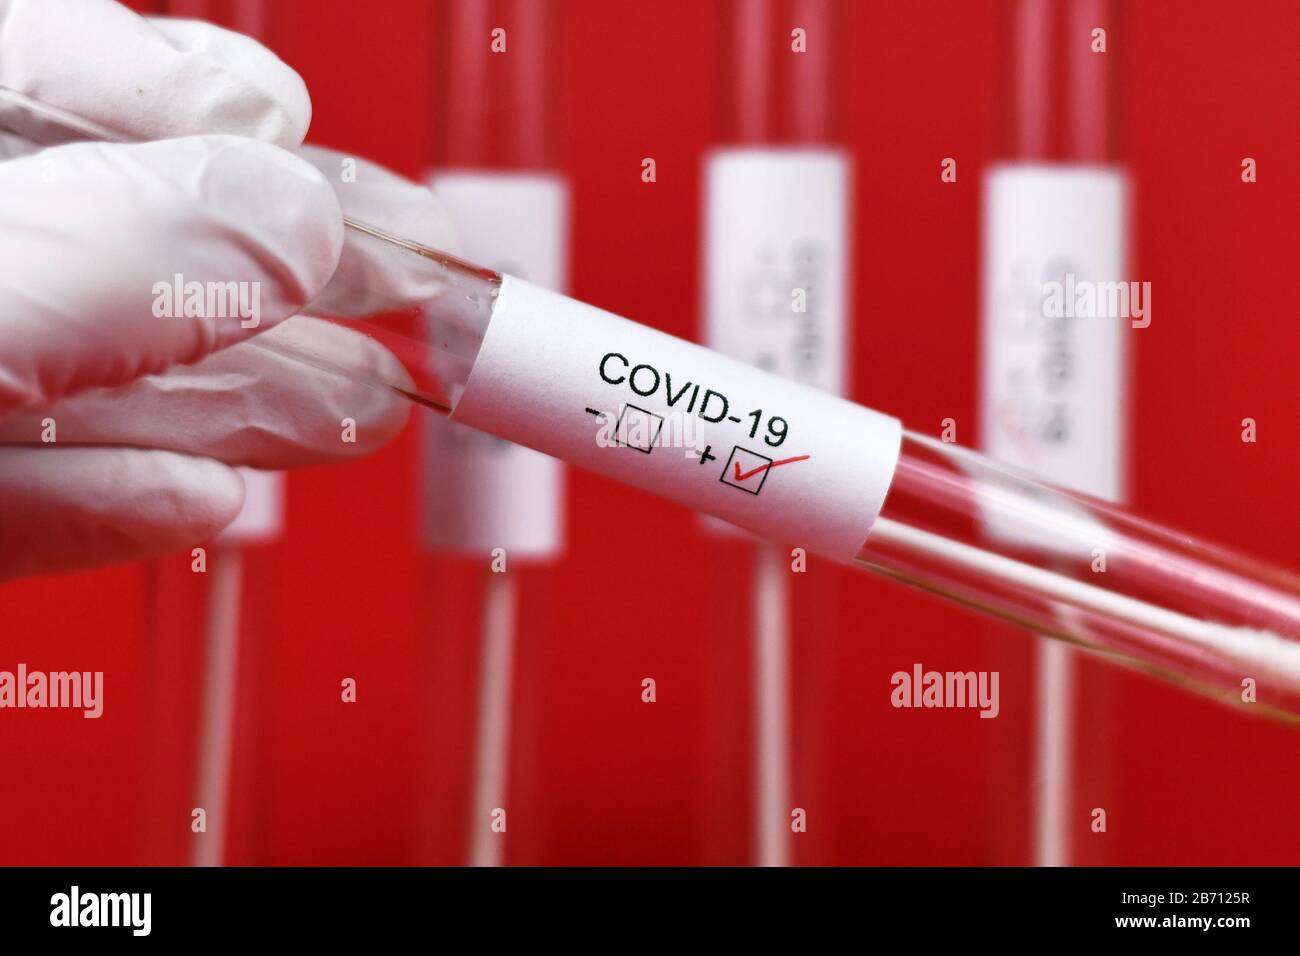 Échantillon de tube d'essai médical positif pour le Coronavirus avec l'étiquette Covid-19 tenue à la main dans le gant en caoutchouc avec d'autres tubes de furie en fond rouge Banque D'Images